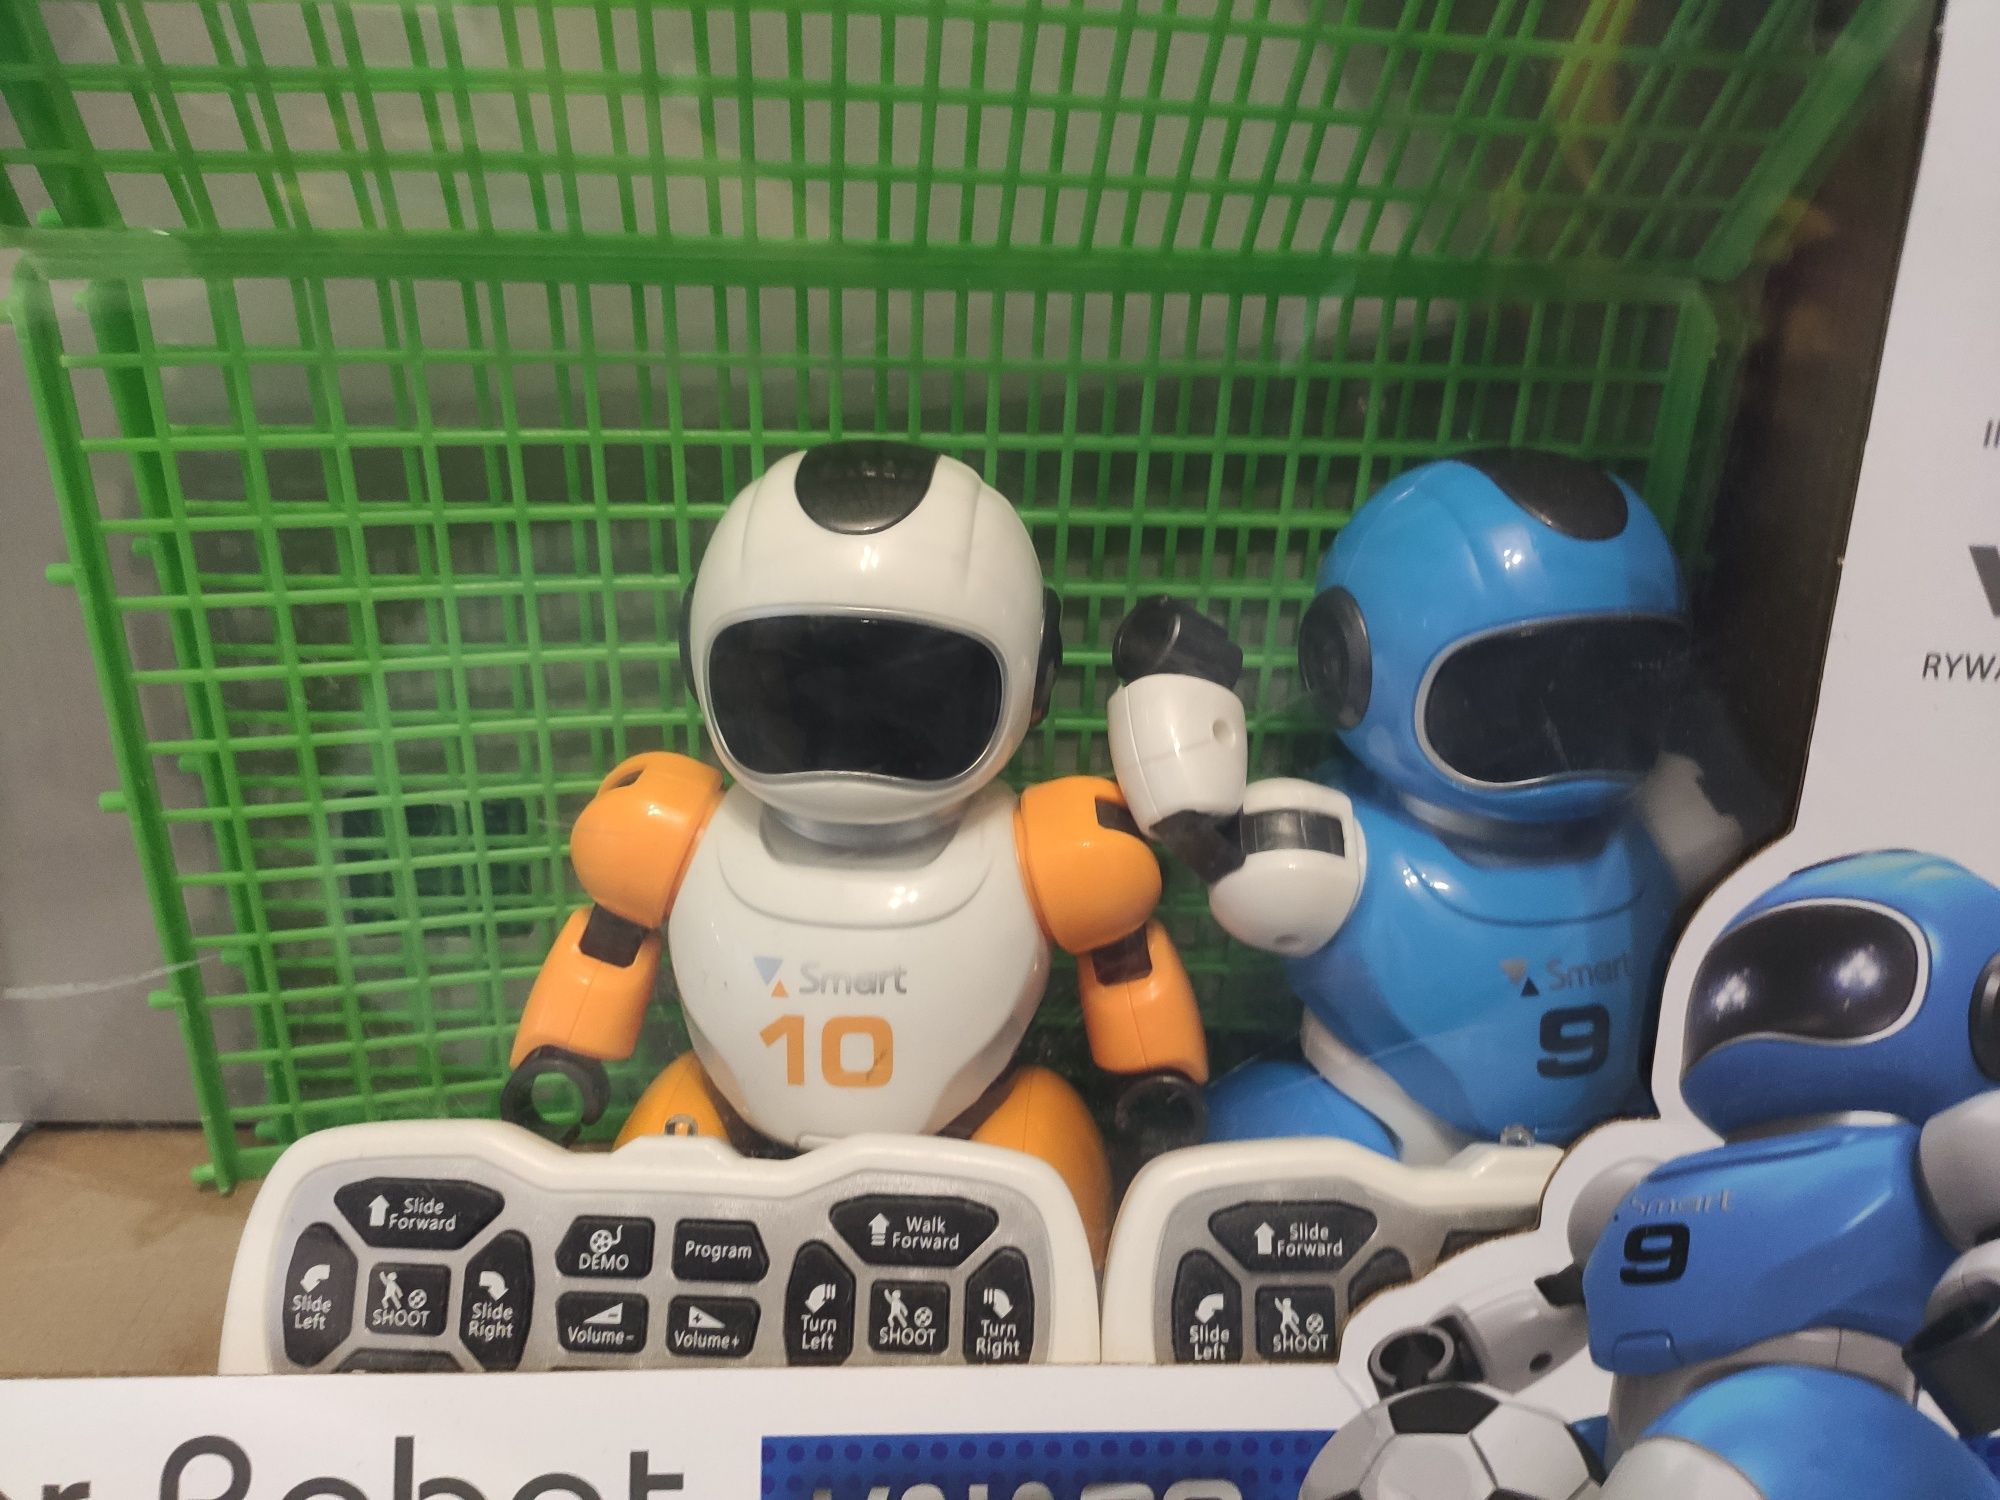 Soccer robot grający w piłkę zdalnie sterowany